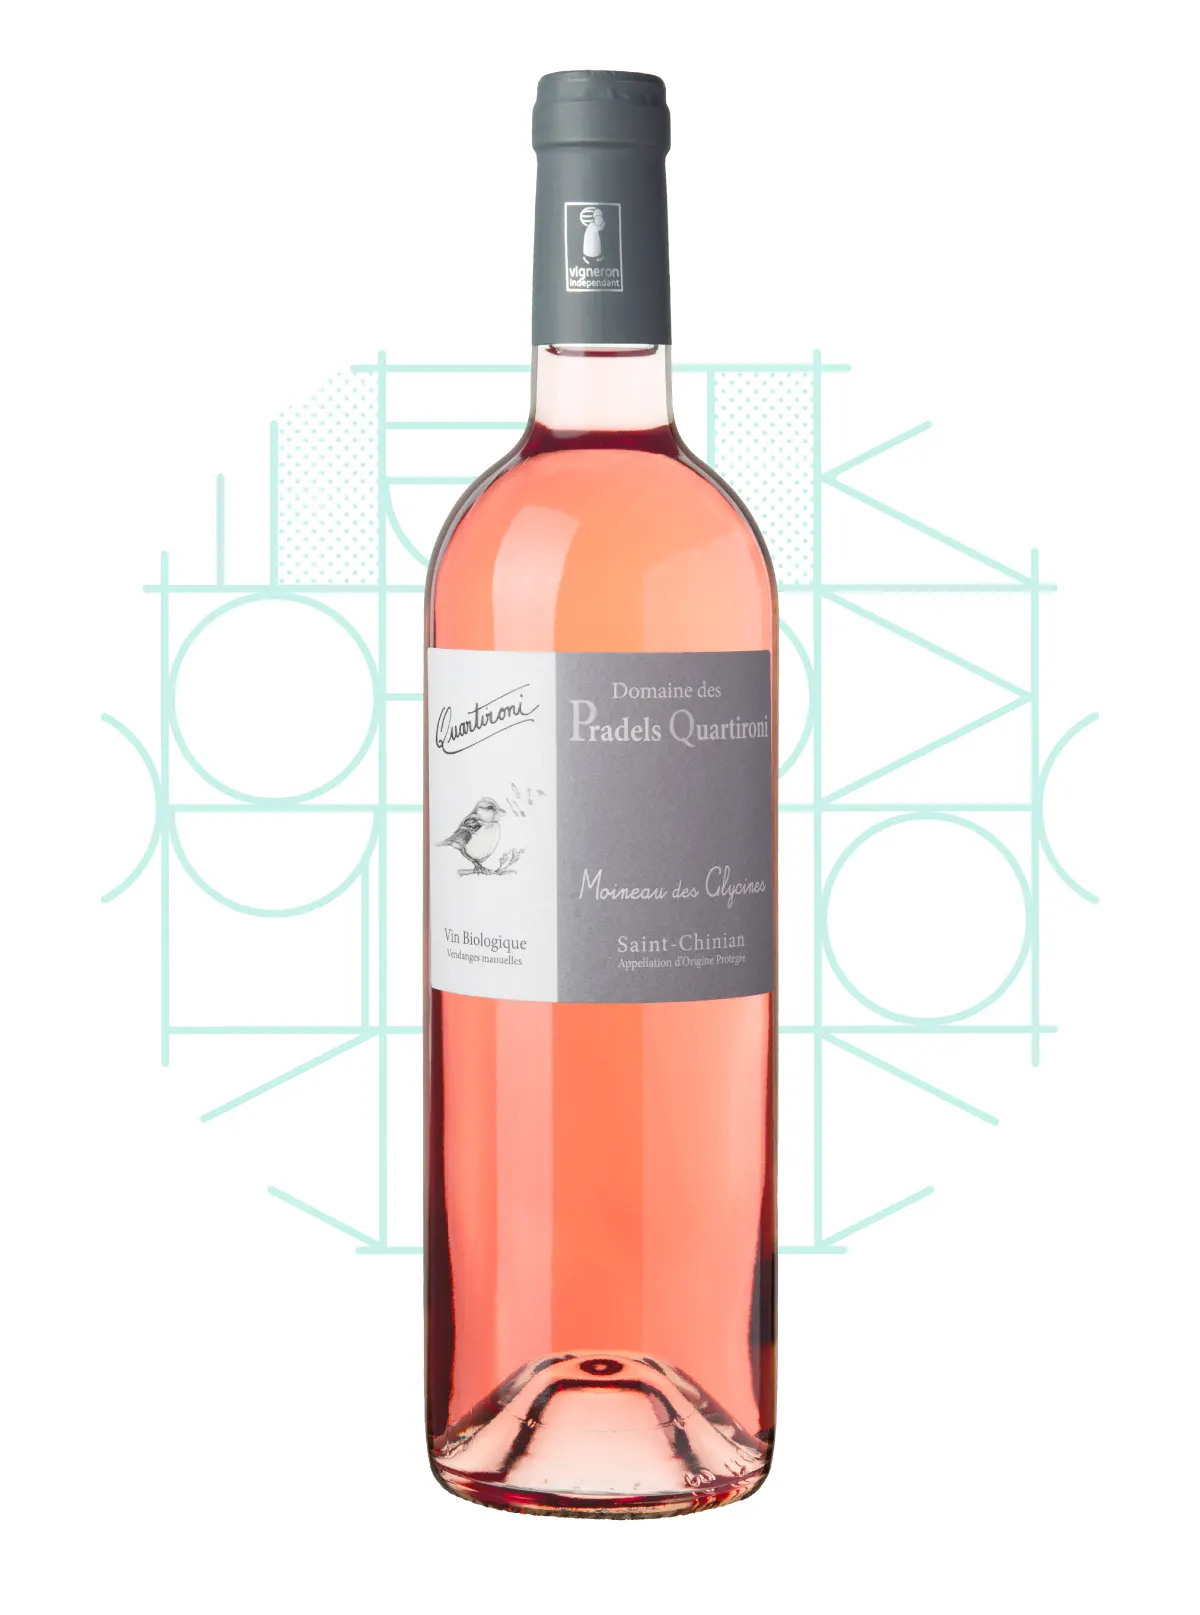 Pradels Quartironi - Vin rosé bio - Cuvée Moineau des Glycines